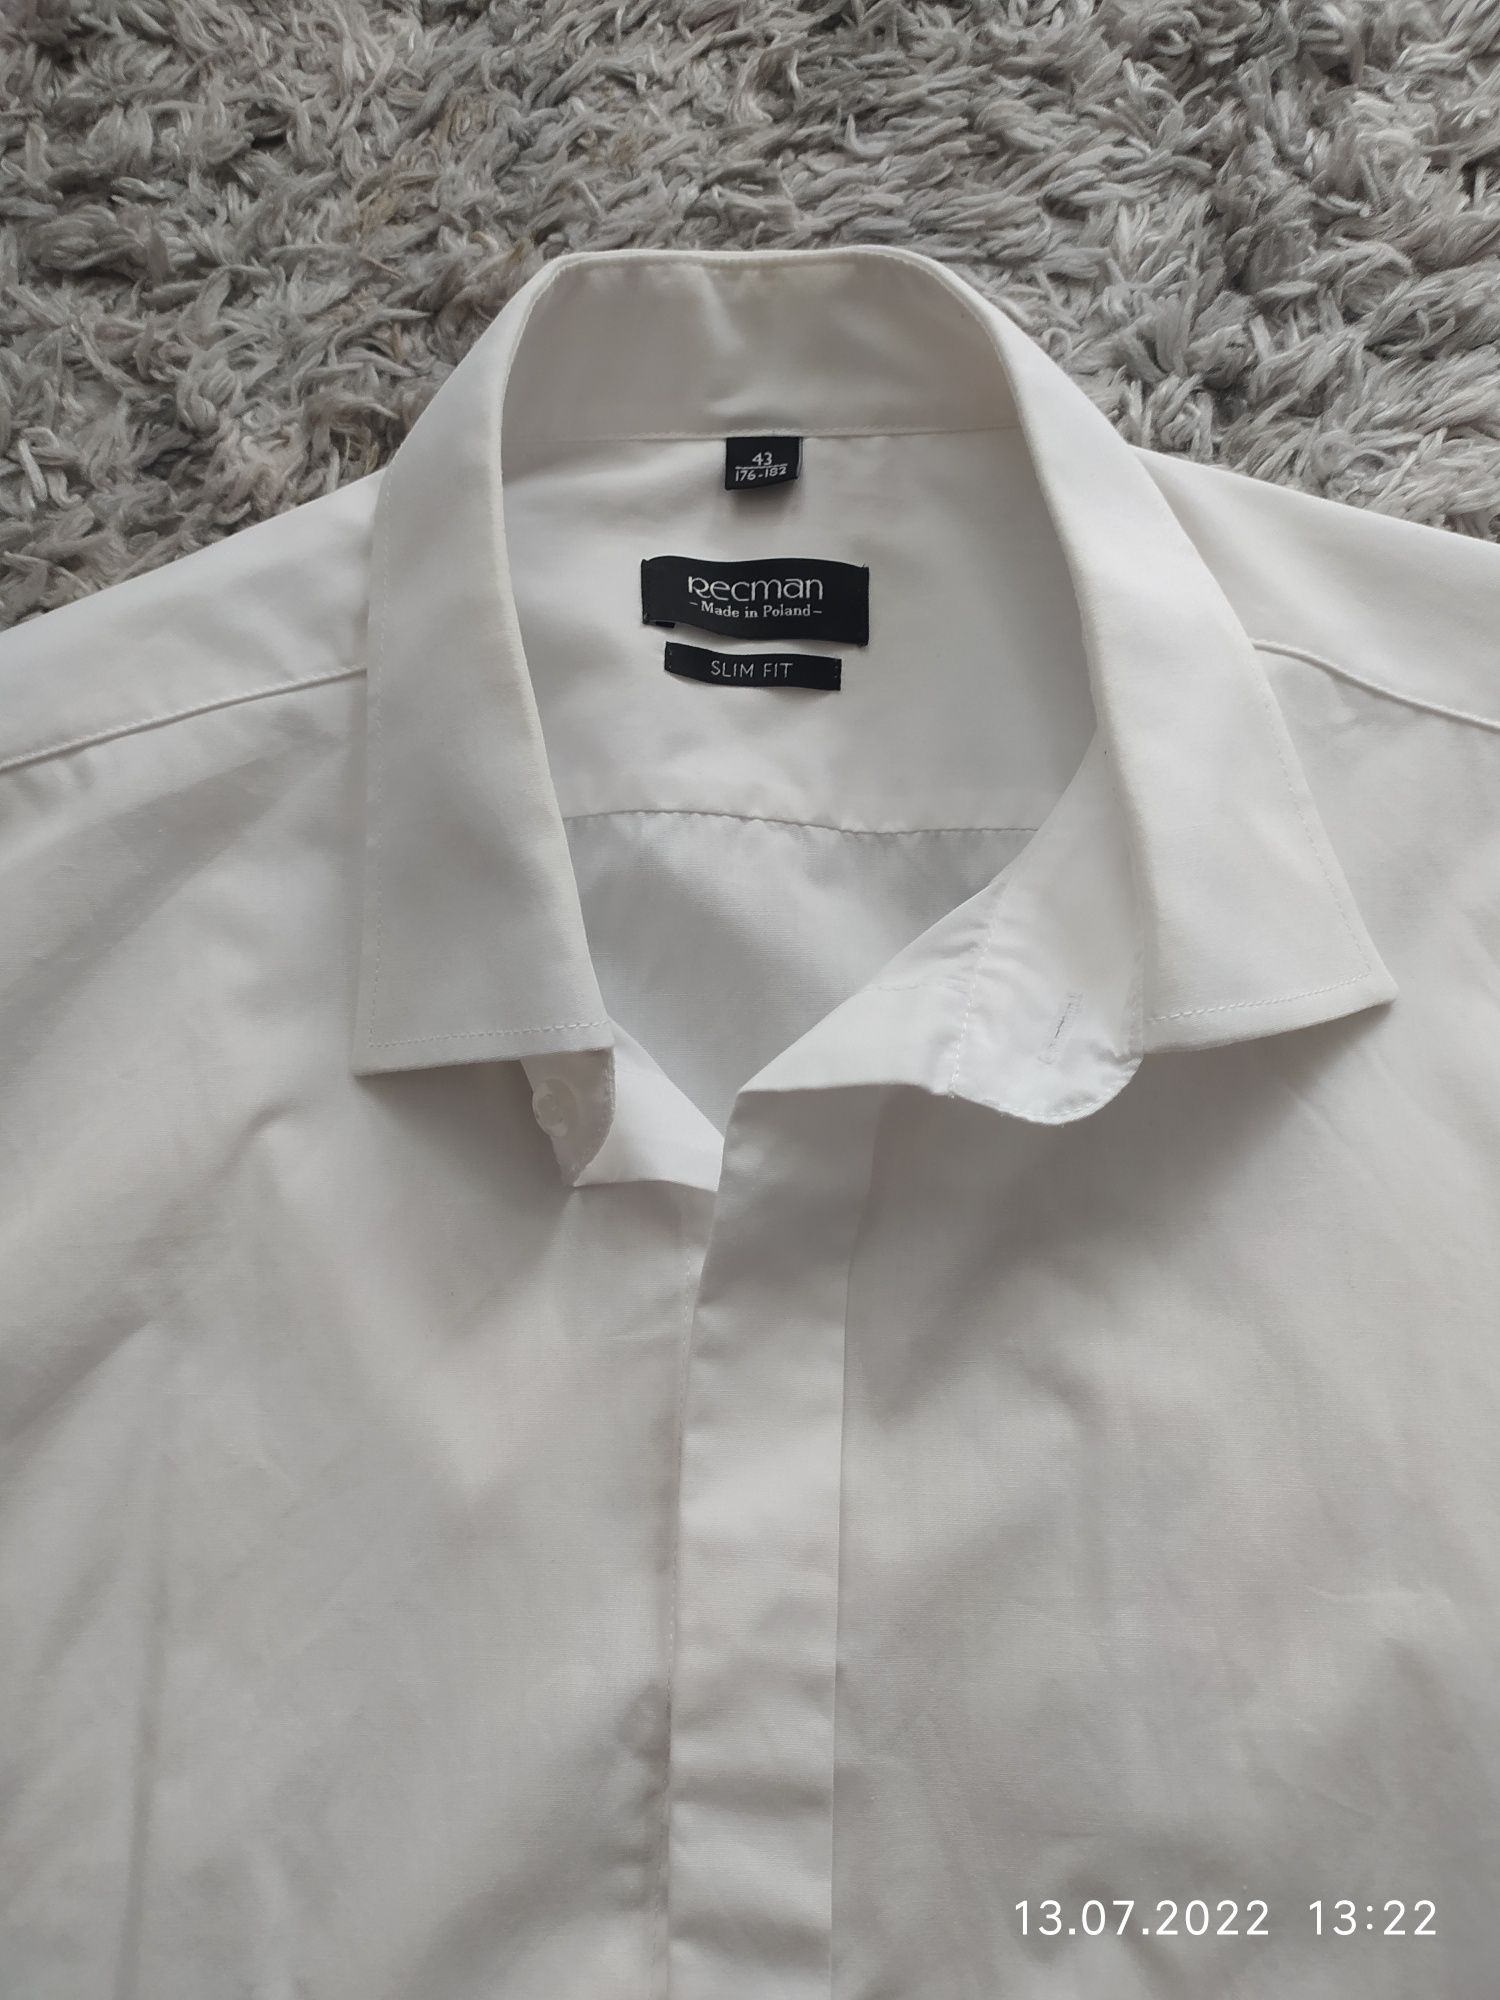 Koszula biała do ślubu recman 43 plus spinki